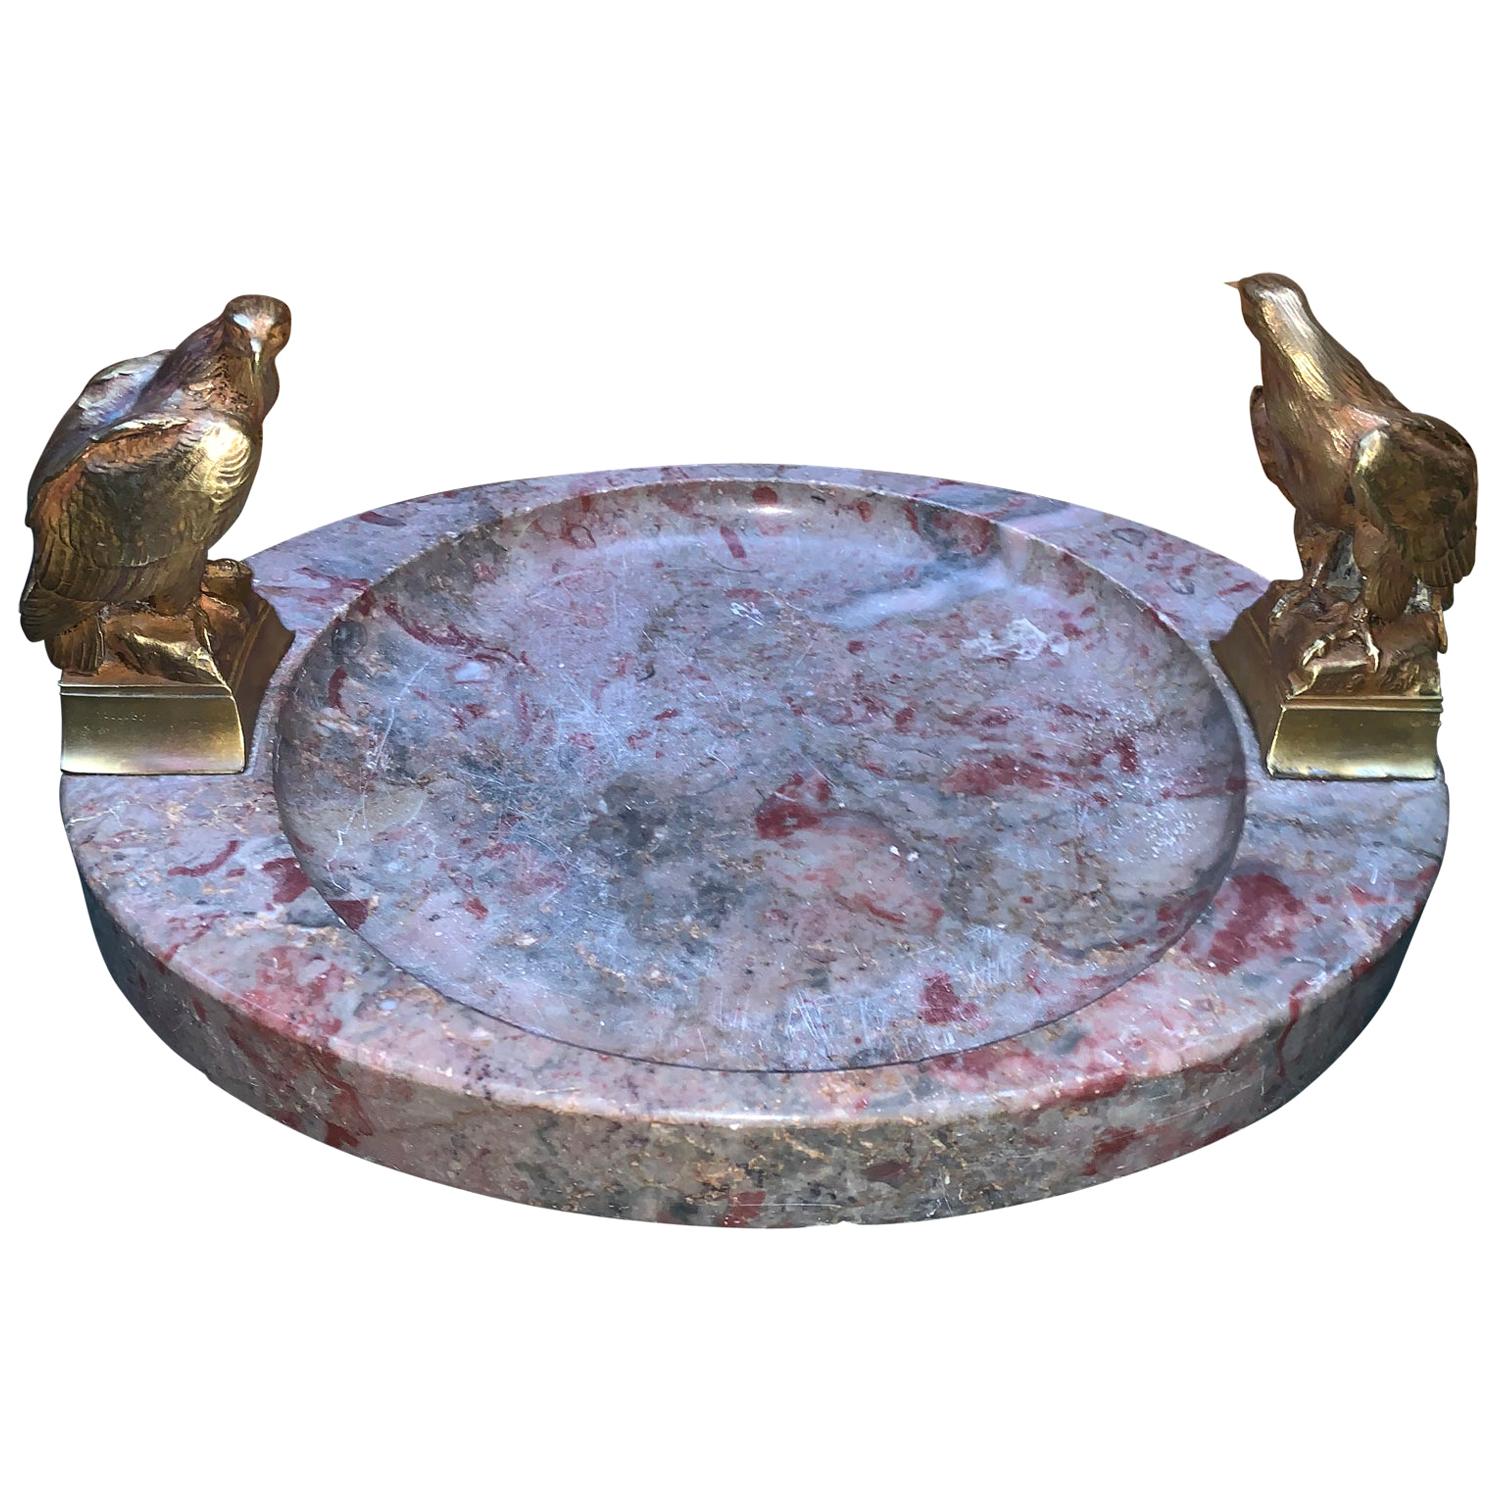 Großer signierter ovaler Aschenbecher oder Tafelaufsatz aus Marmor mit zwei bronzenen Adlern

Signiert 